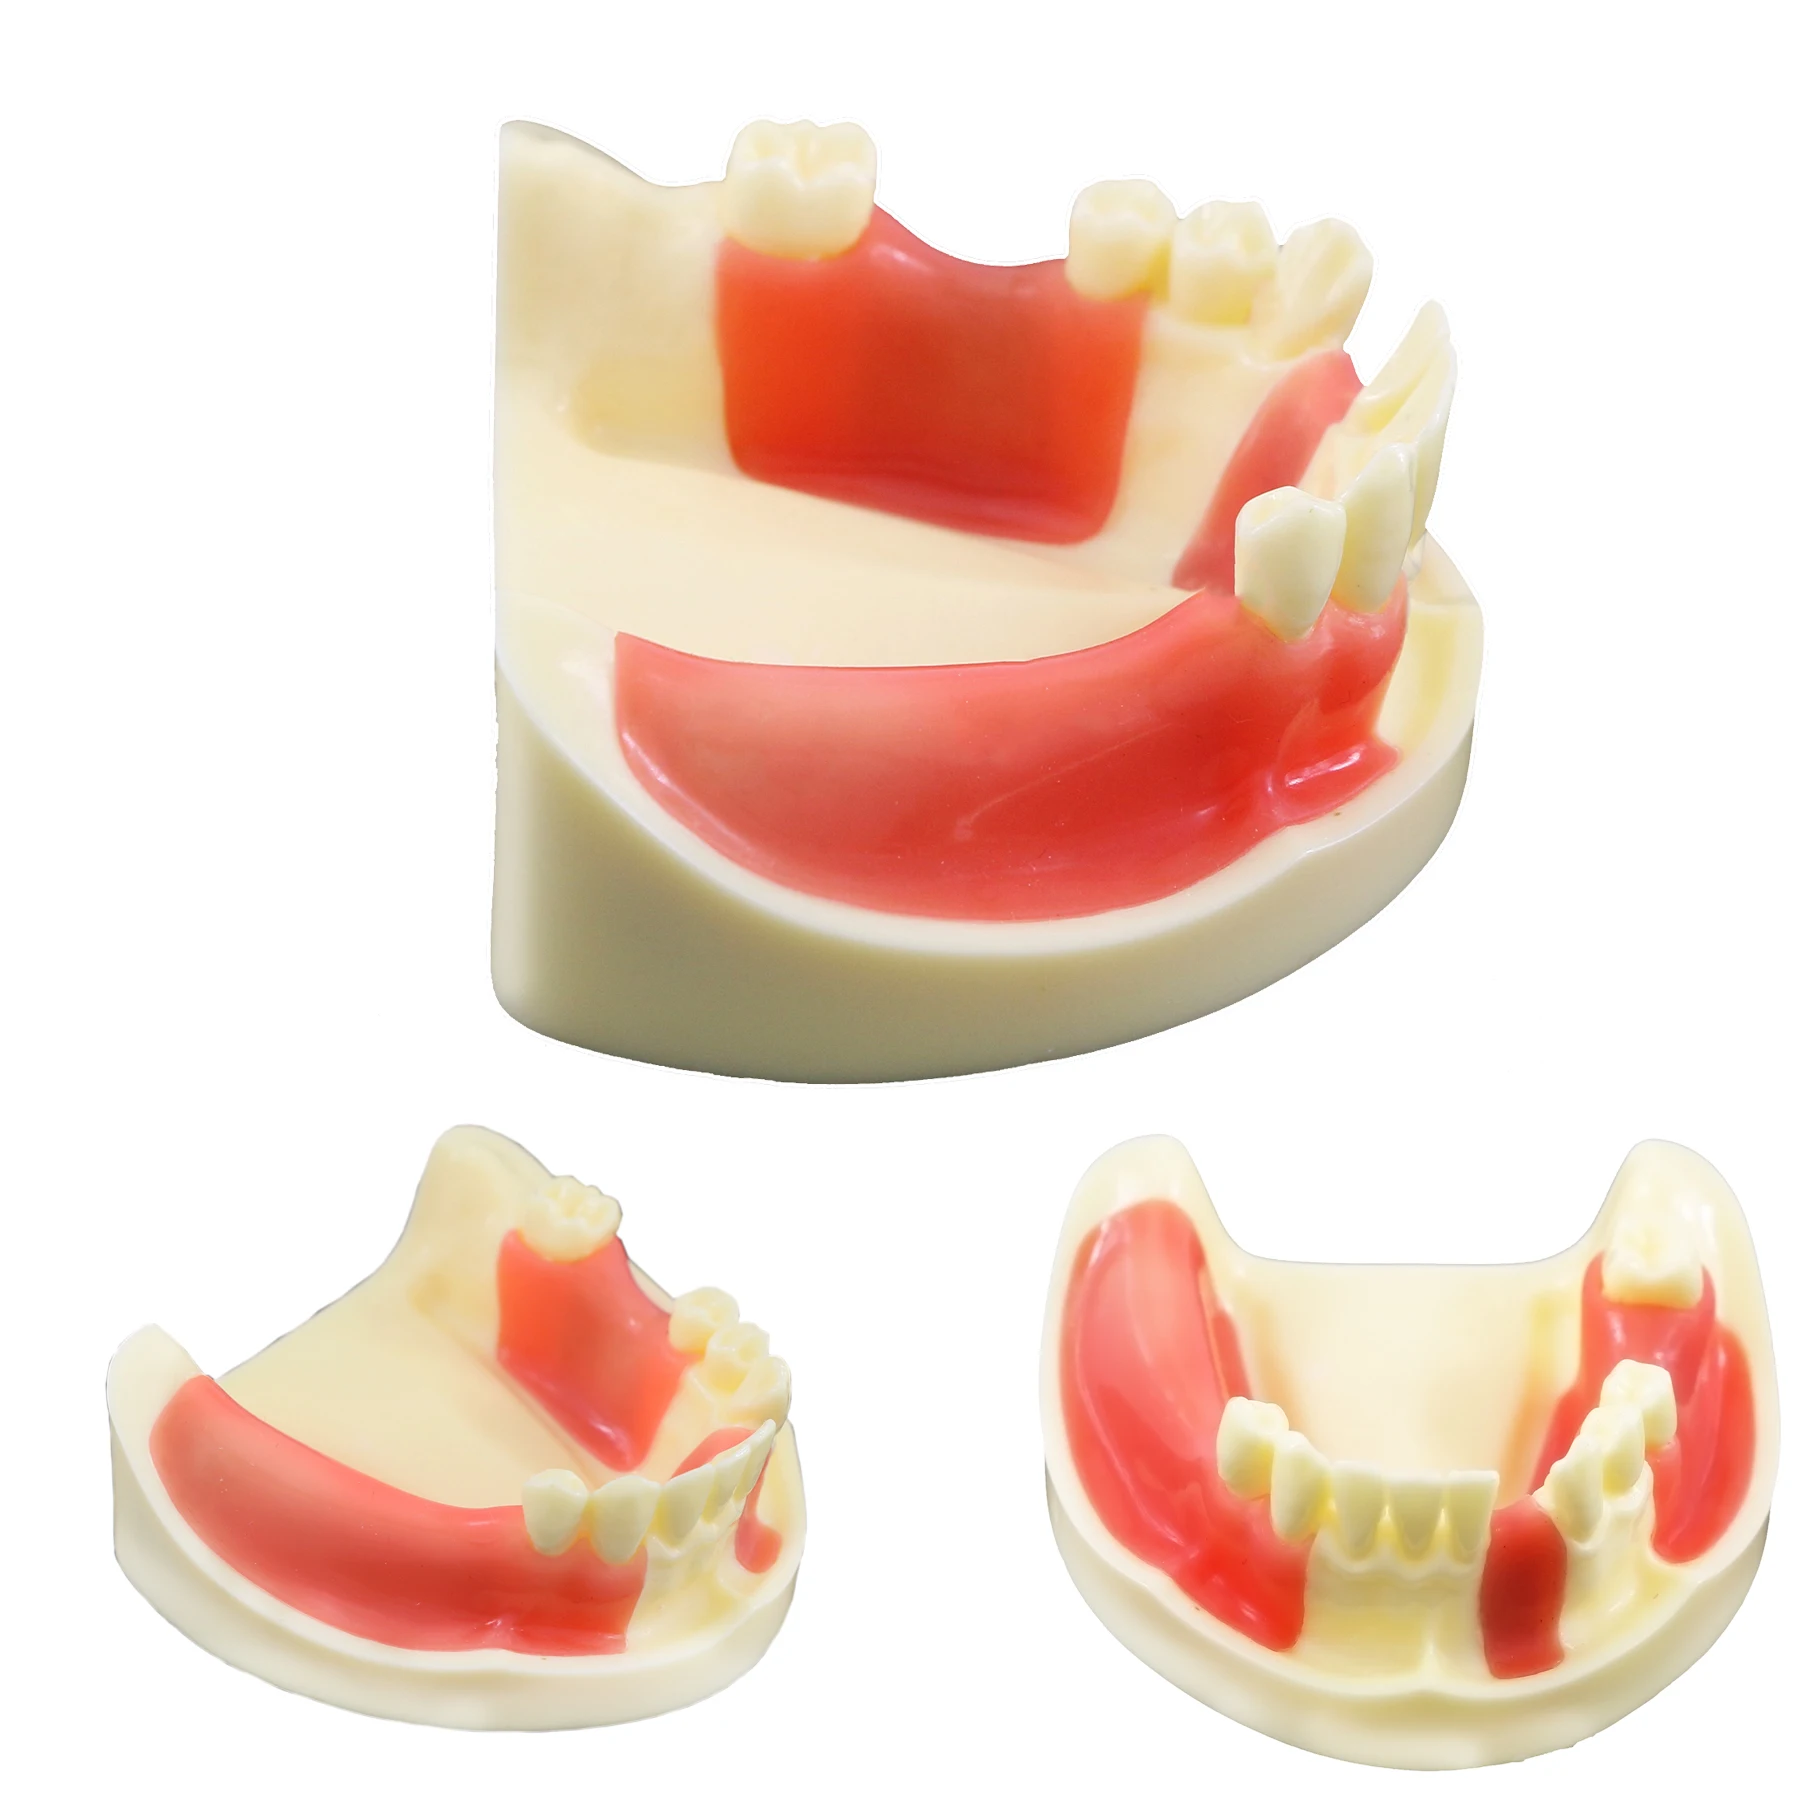 Diş Modeli Eğitim Diş Hekimliği Diş Hekimi Öğrenci Uygulama Kesme Sütür İmplant Diş Modelleri Diş model beyin